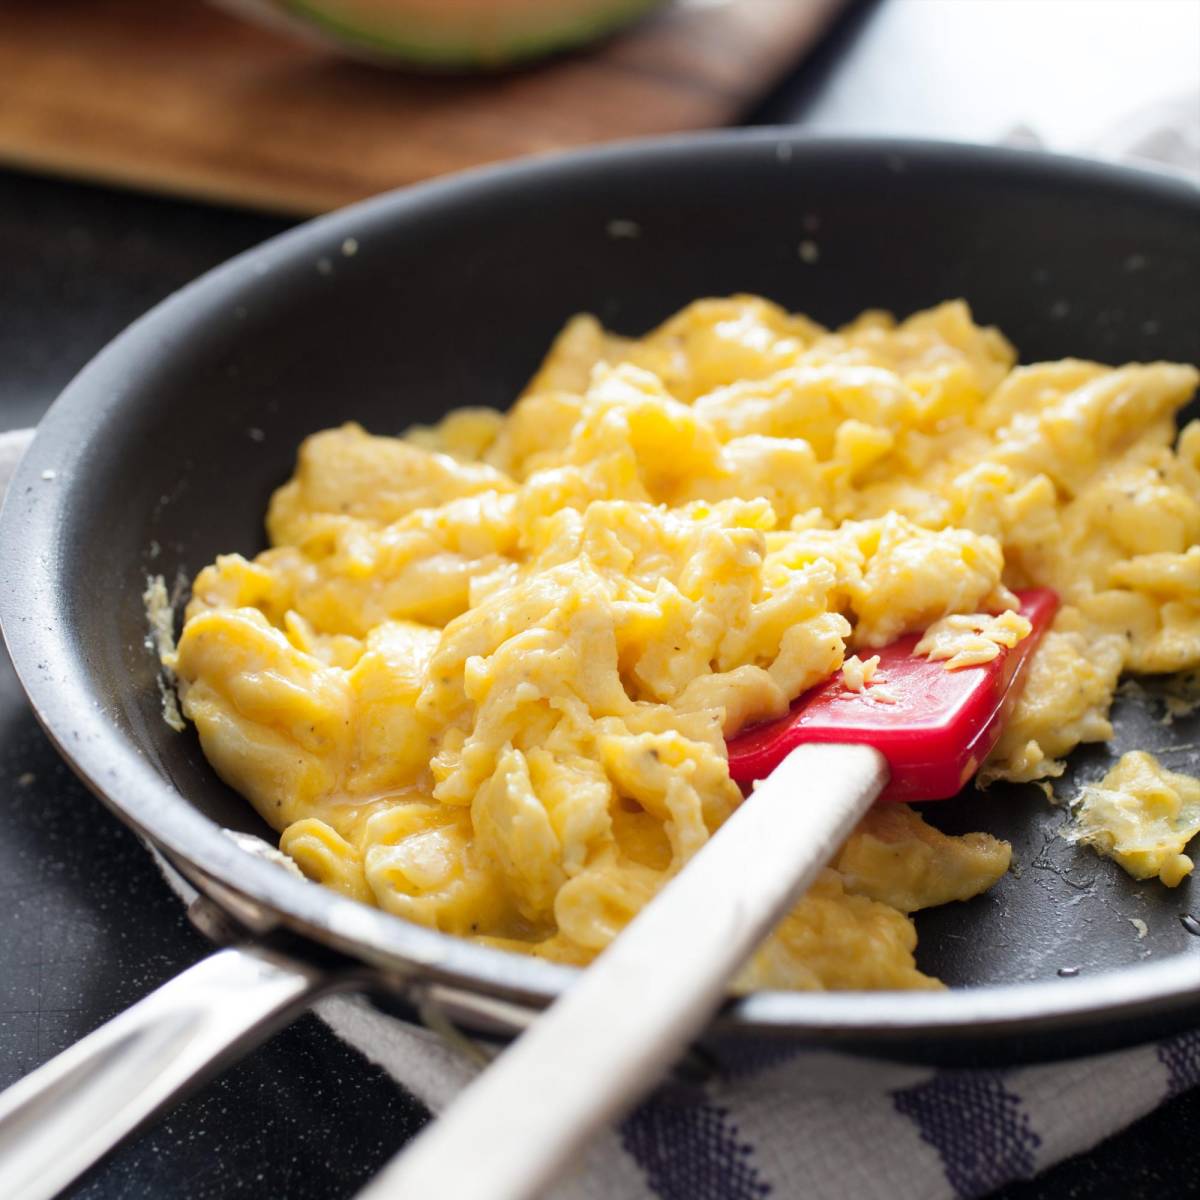 8 maneras fáciles de cocinar huevos